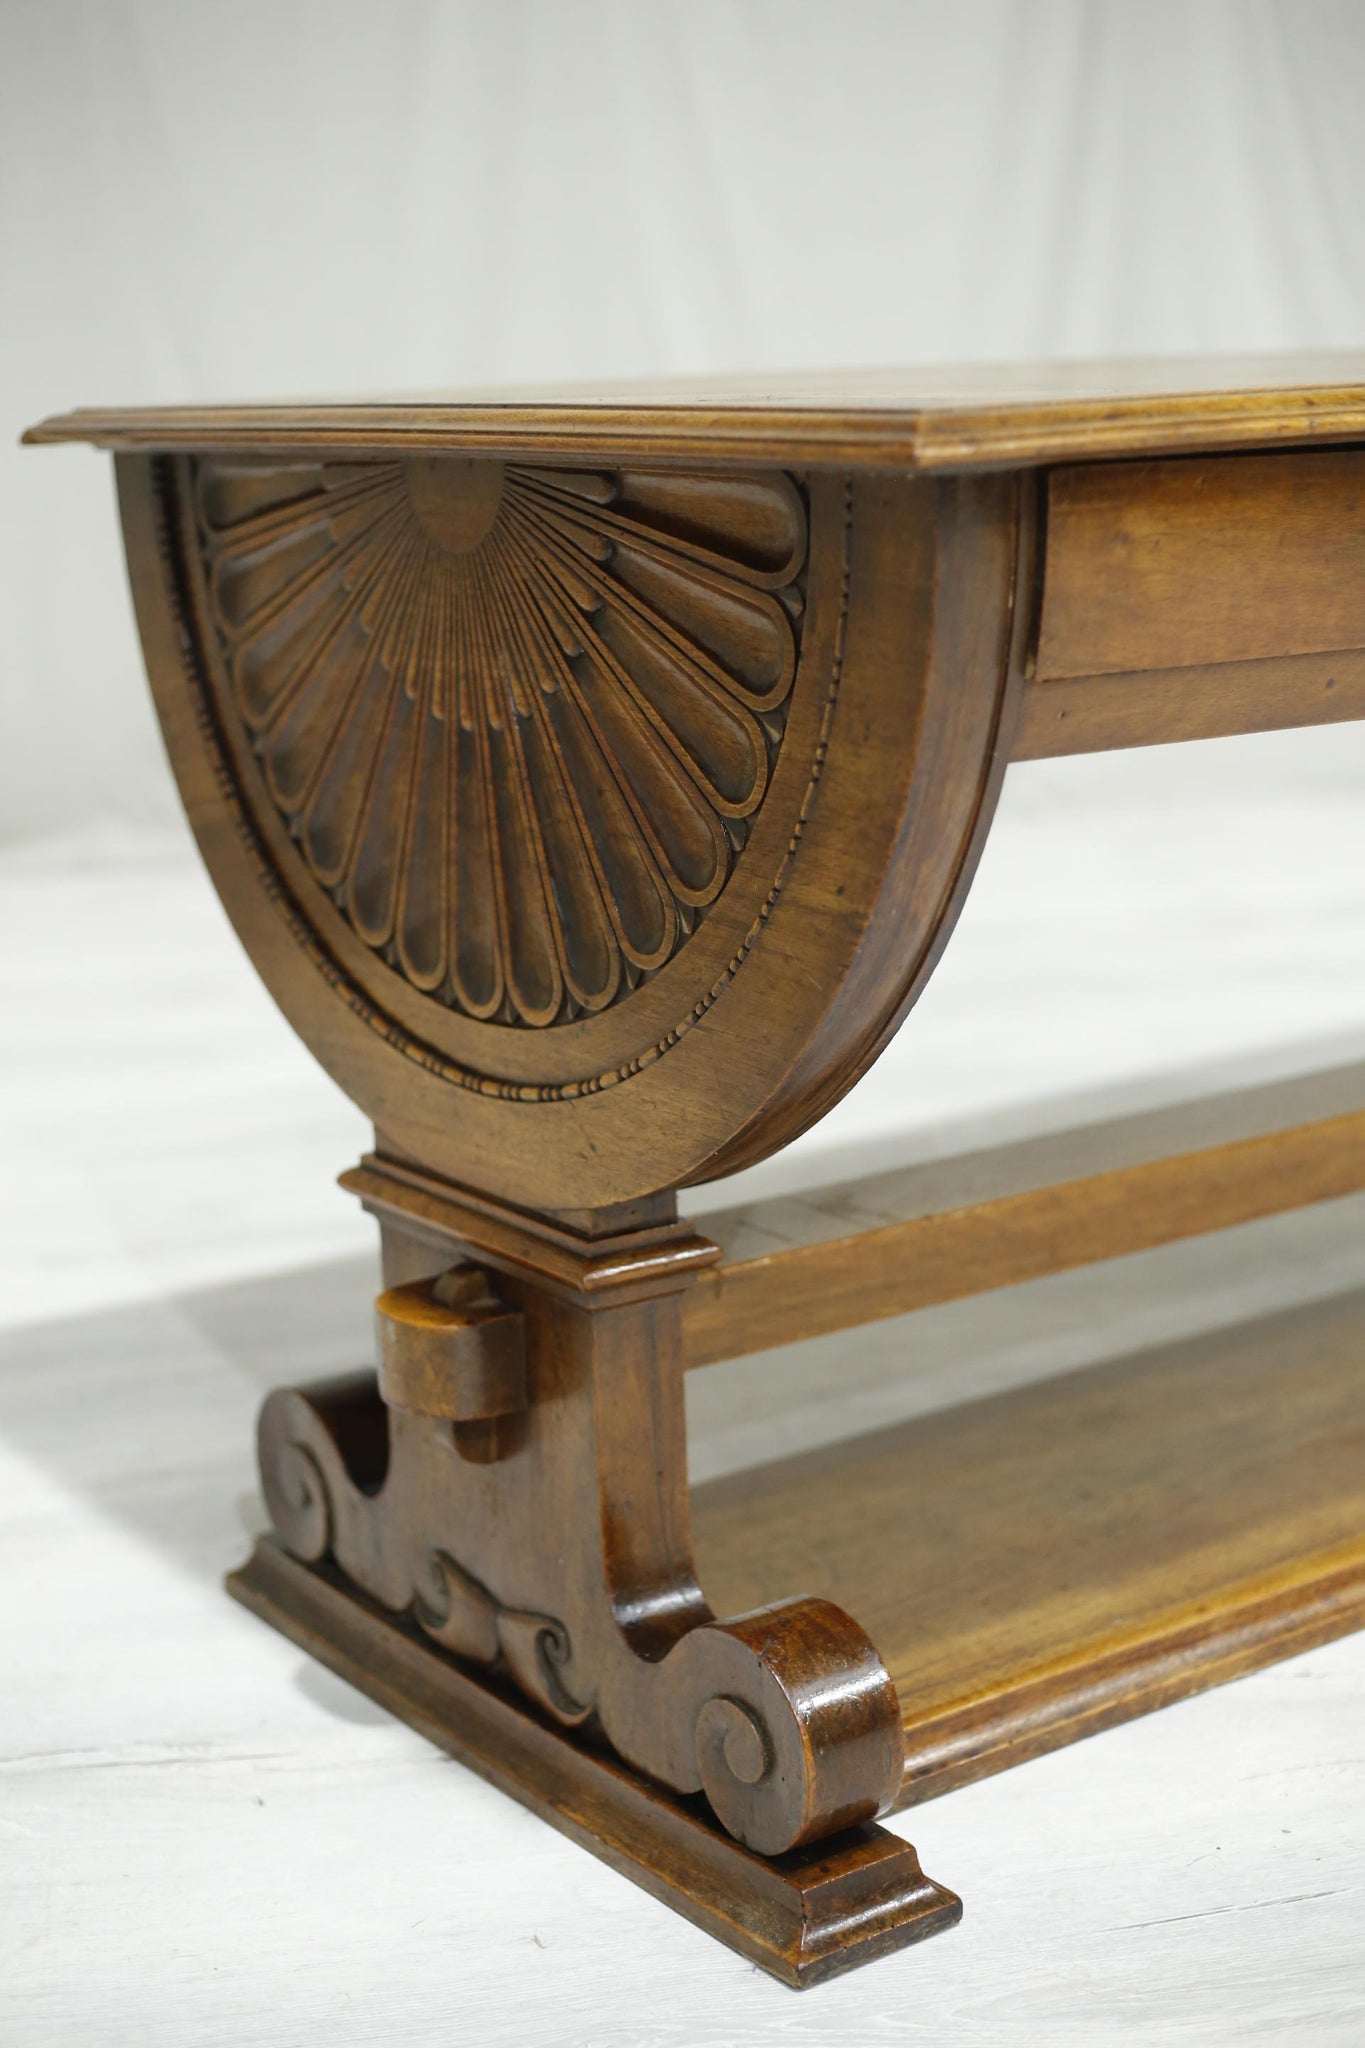 19th century French mahogany drapers table